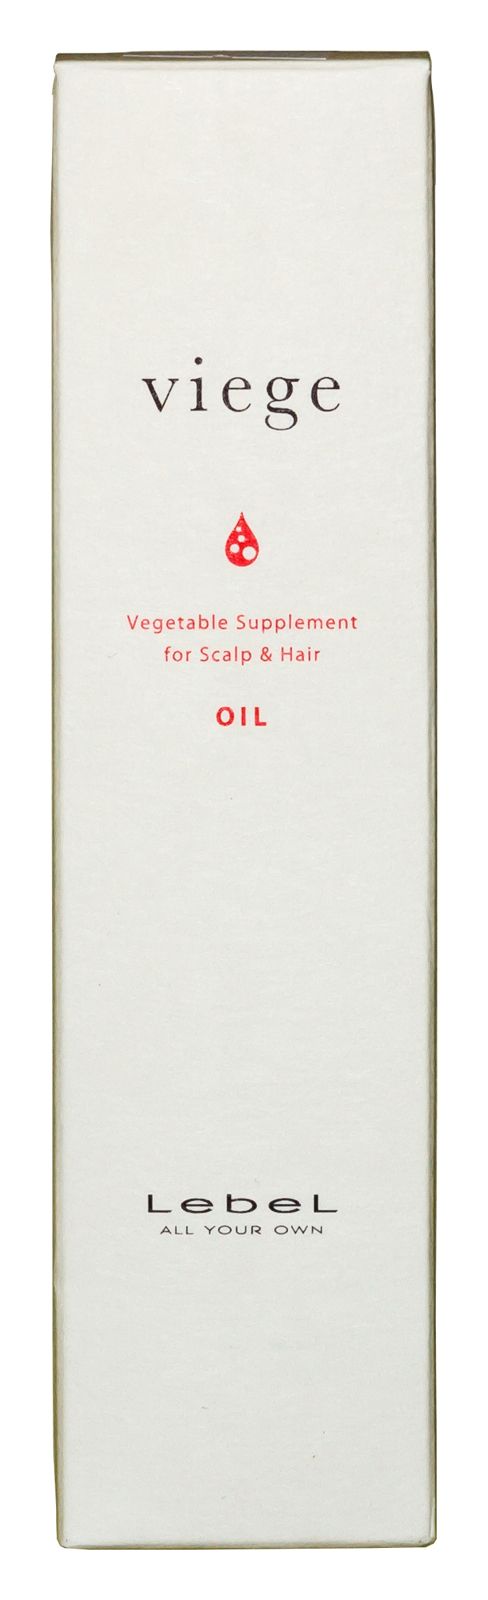 Купить Lebel Viege Oil - Масло для восстановления волос 90 мл, Lebel (Япония)